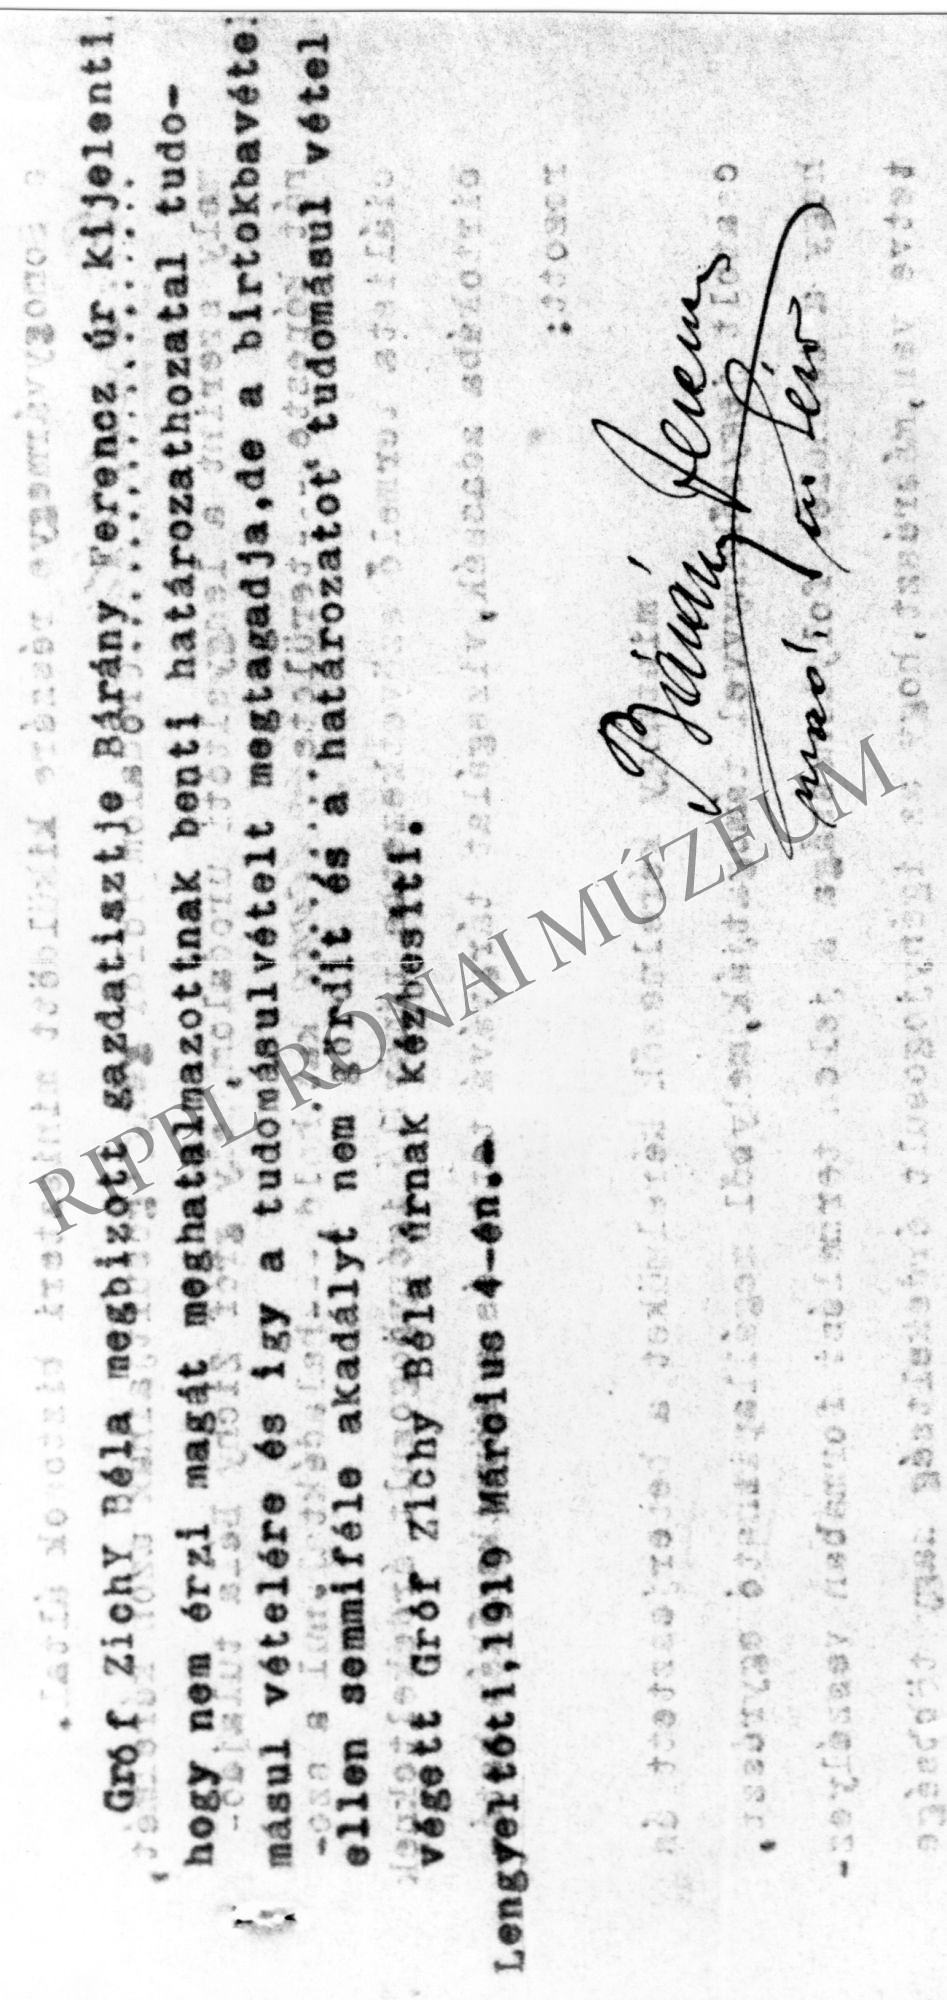 gr. Zichy Béla gazdatisztjének nyilatkozata az államosításról, Lengyeltóti, 1919. március 4.l (Rippl-Rónai Múzeum CC BY-NC-SA)